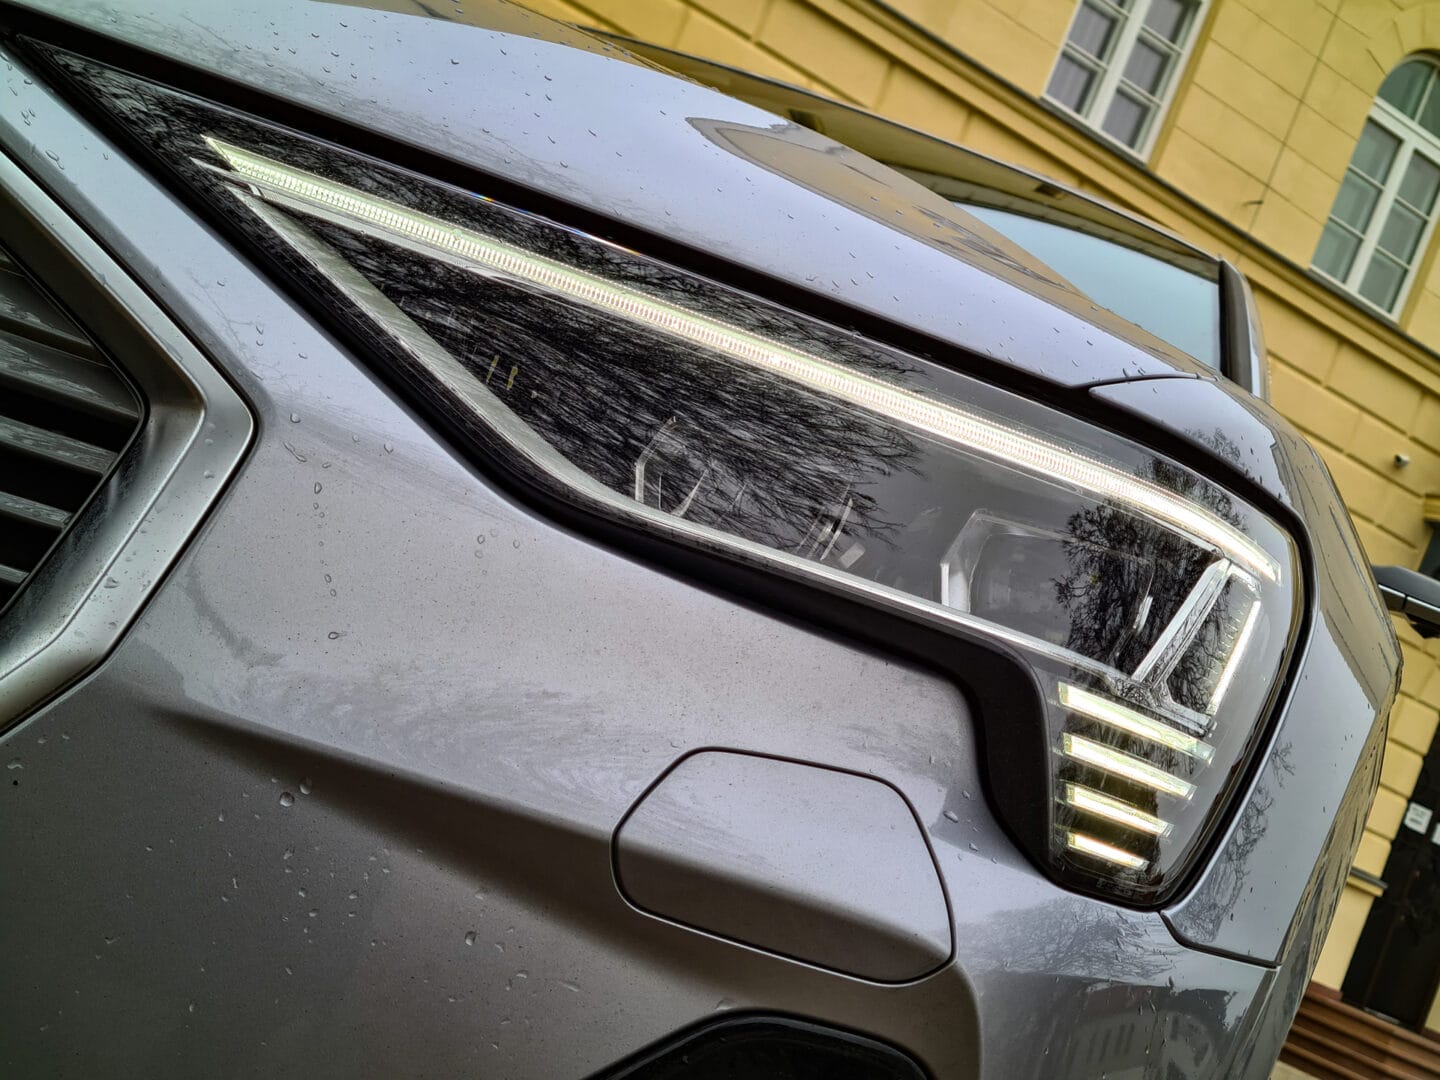 Audi e-tron Sportback: Generator pozytywnych emocji